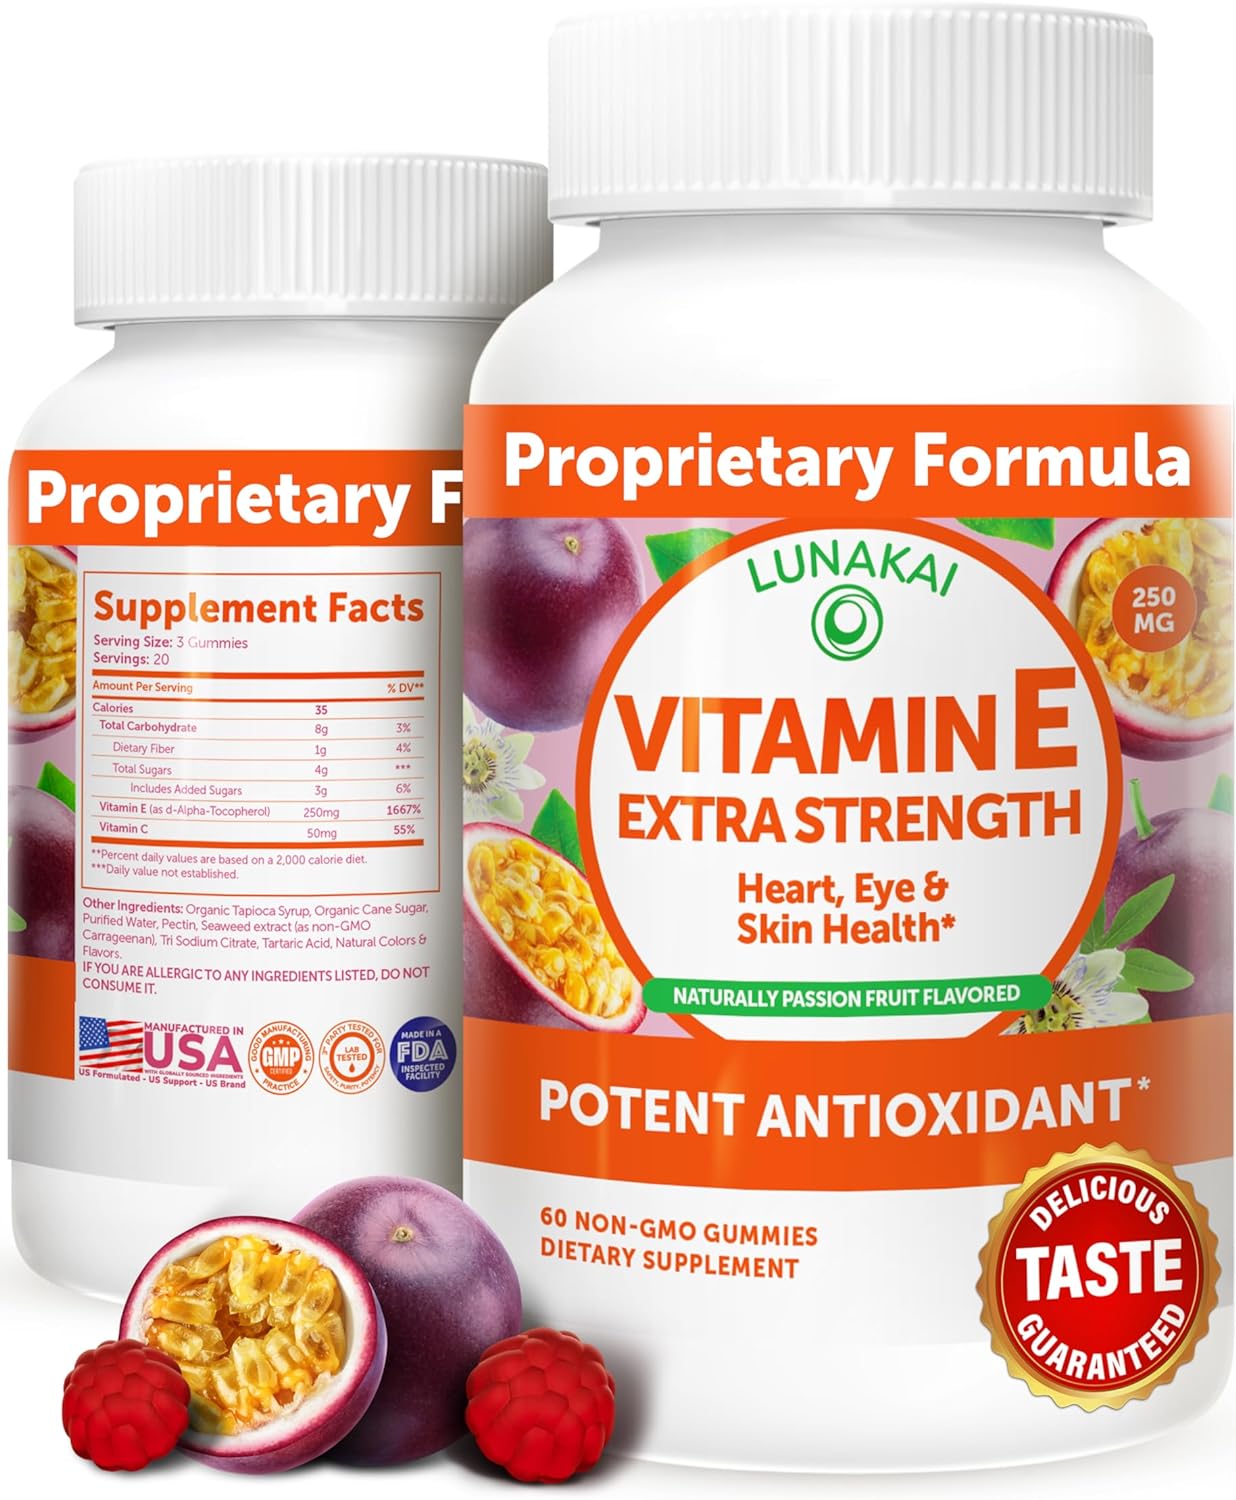 Vitamin E Gummies with Vitamin C - Tastiest Proprietary Formula - 250mg (400IU) Vit E - Antioxidant, Skin & Eye Health Support, Non-GMO, Vegan Vitamin E Supplement - Natural Vitamina E Gummy - 60Count